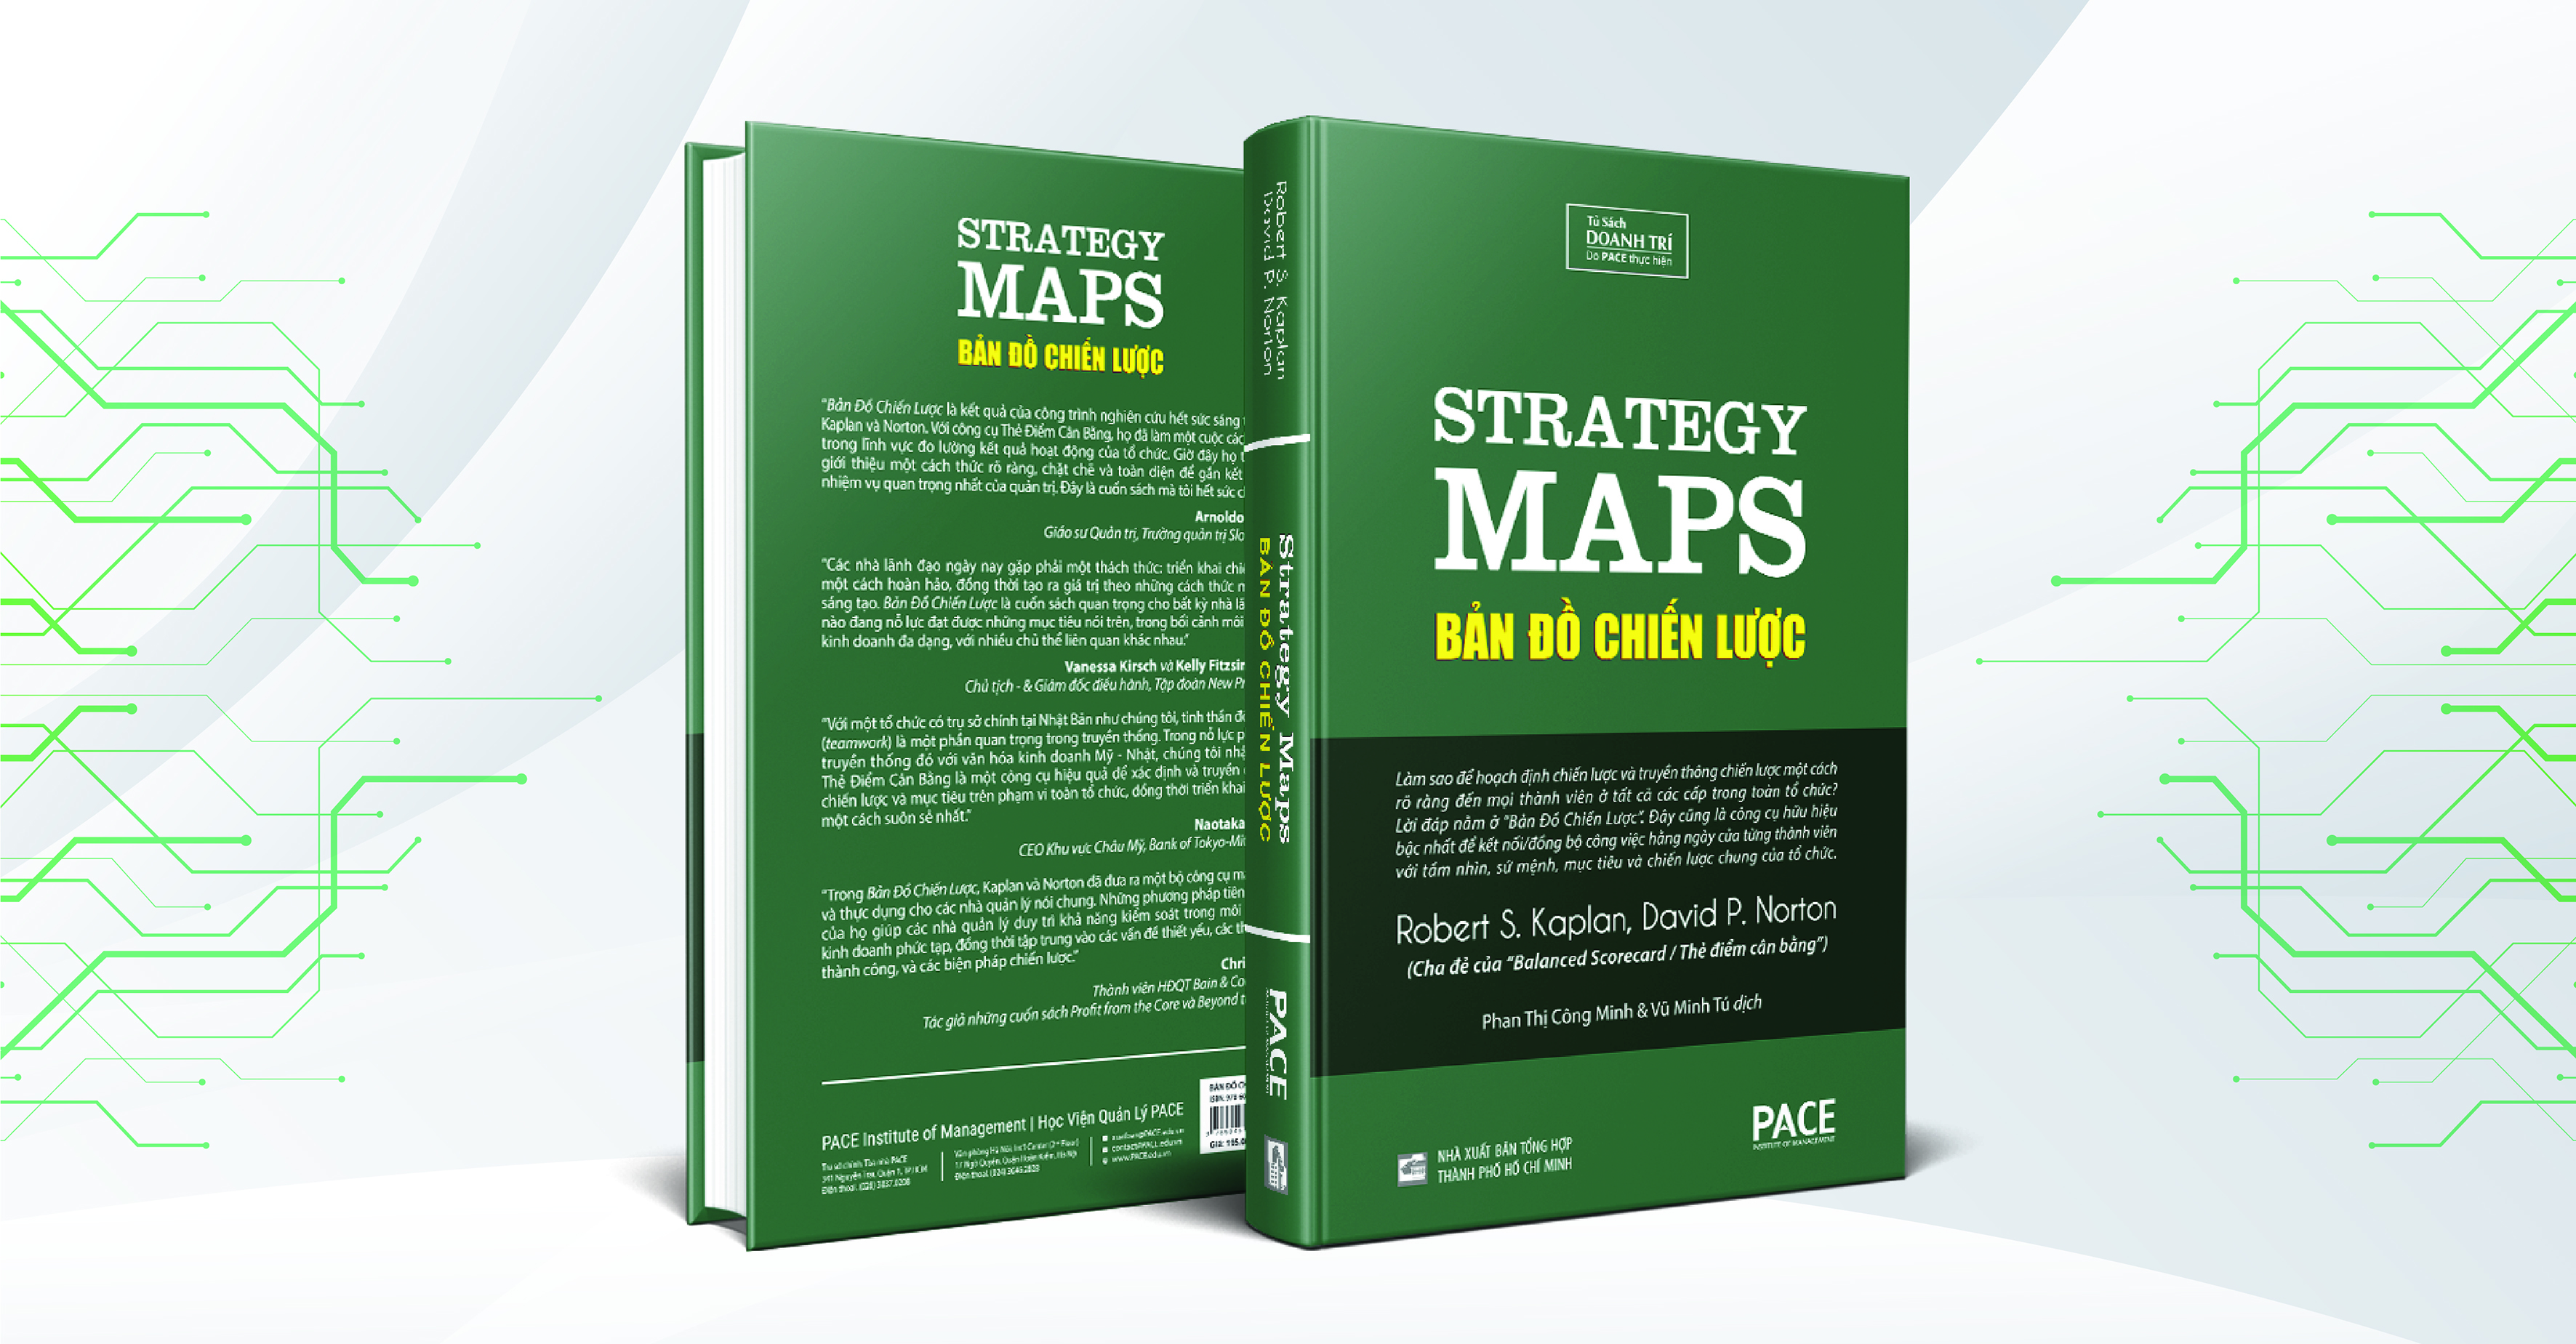 BẢN ĐỒ CHIẾN LƯỢC (Strategy Maps) - Robert S. Kaplan, David P. Norton - Phan Thị Công Minh và Vũ Minh Tú (dịch) - Tái bản - (bìa cứng)